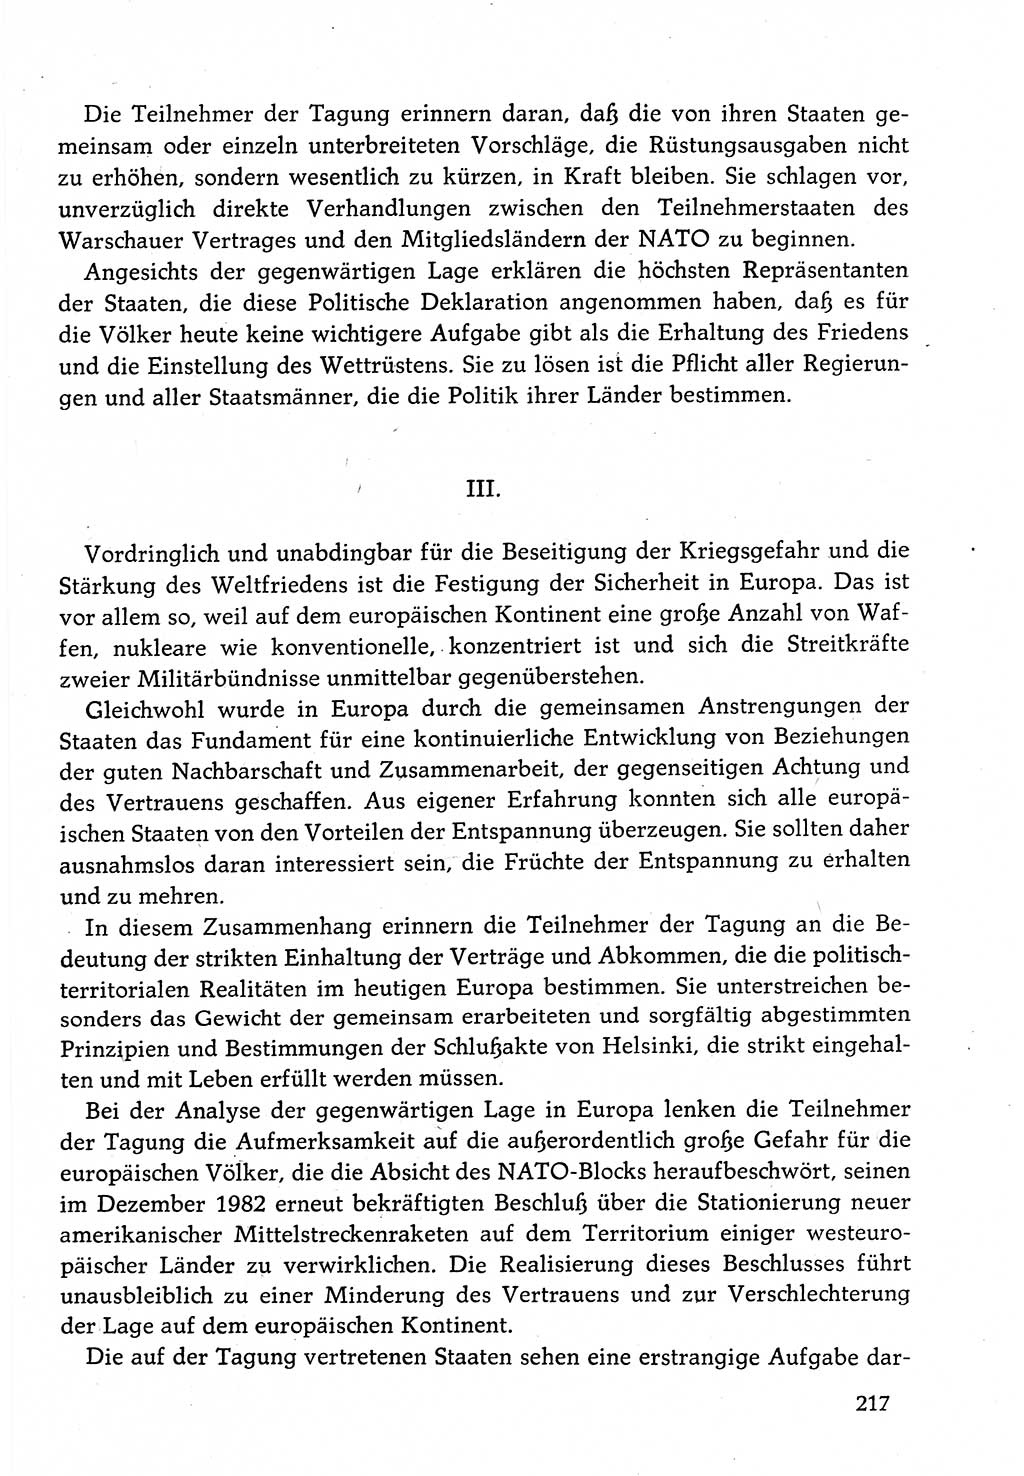 Dokumente der Sozialistischen Einheitspartei Deutschlands (SED) [Deutsche Demokratische Republik (DDR)] 1982-1983, Seite 217 (Dok. SED DDR 1982-1983, S. 217)